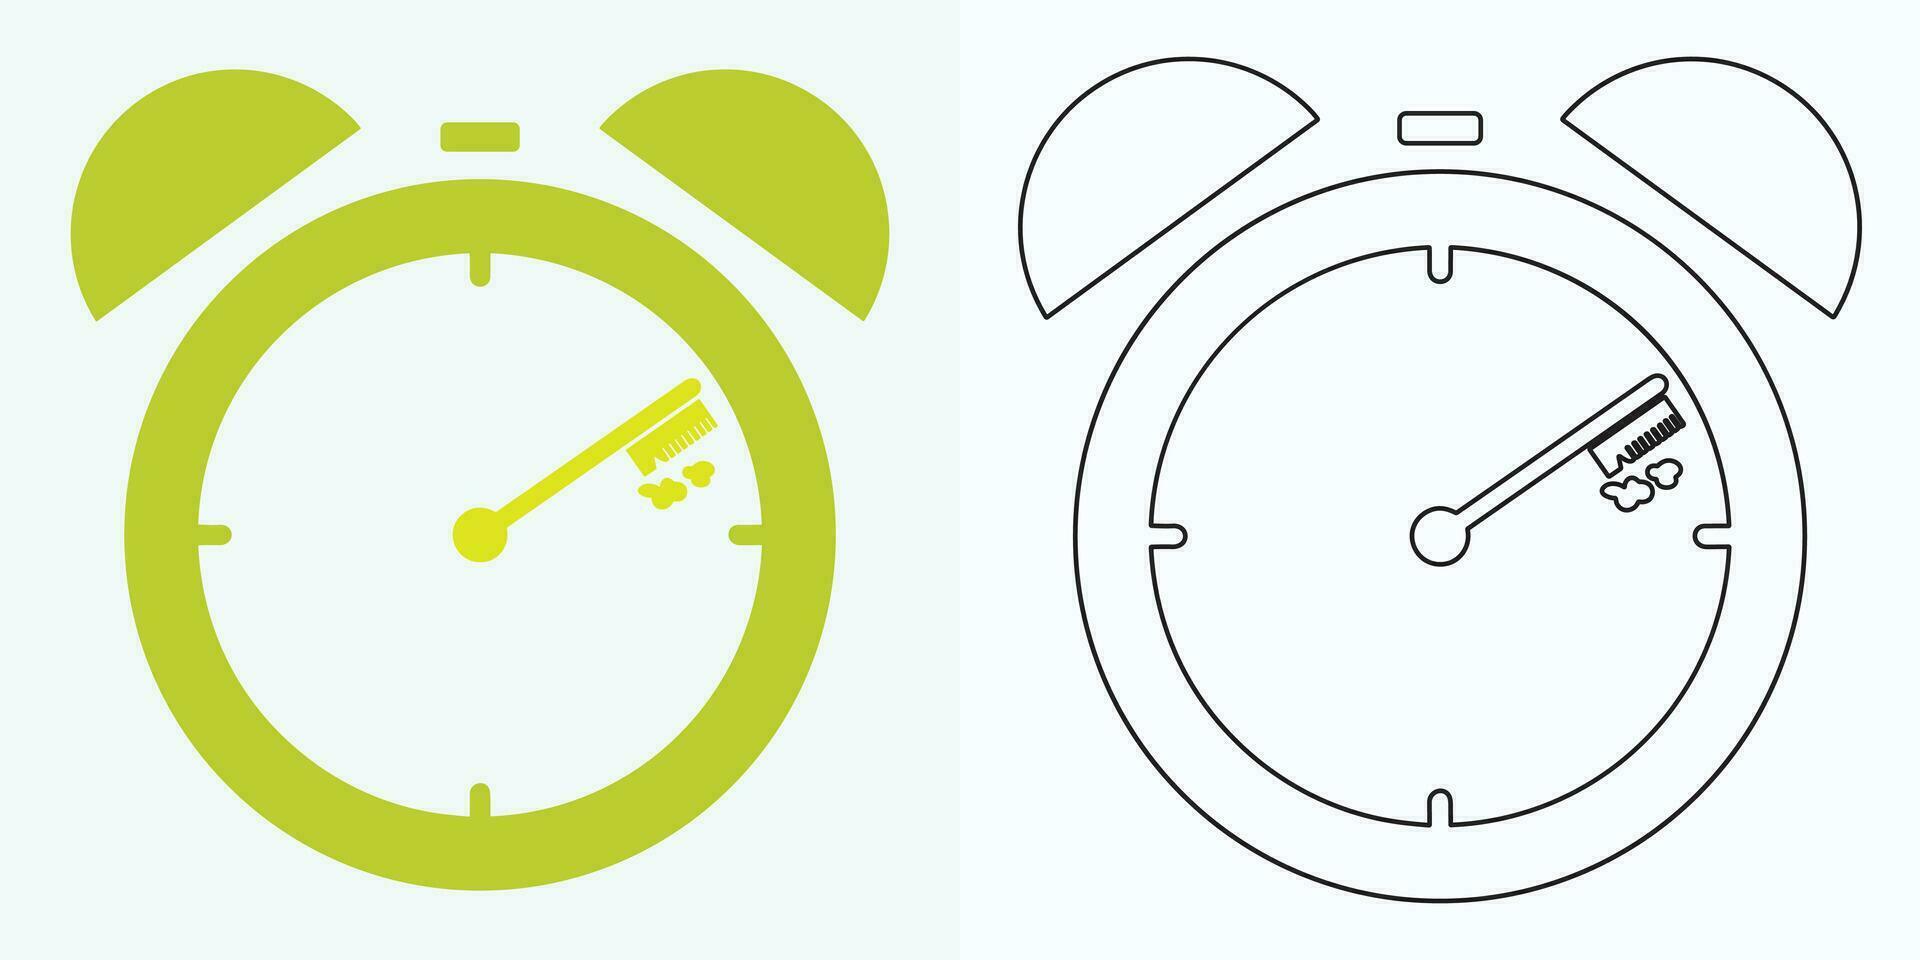 Neu Stil analog Uhr eben Vektor Symbol. Symbol von Zeit Management, Chronometer mit Stunde, Minute, und zweite Pfeil. einfach Illustration isoliert auf ein Weiß Hintergrund.